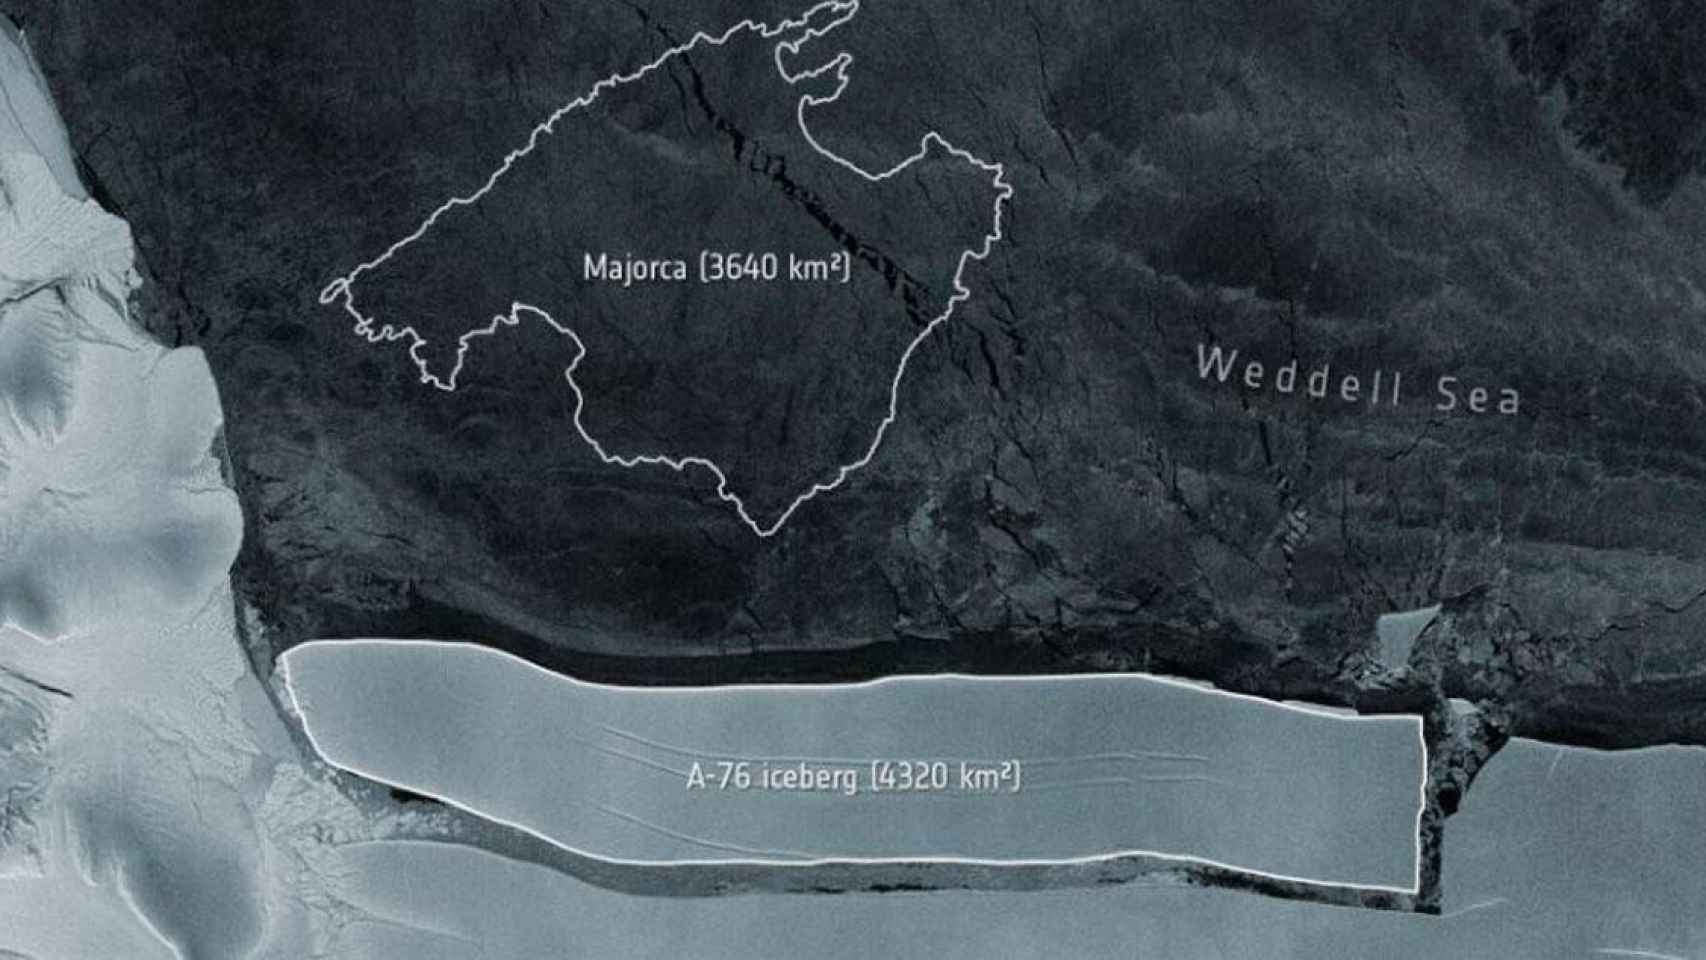 El iceberg A-76 tiene unas dimensiones mayores que las de Mallorca /EP